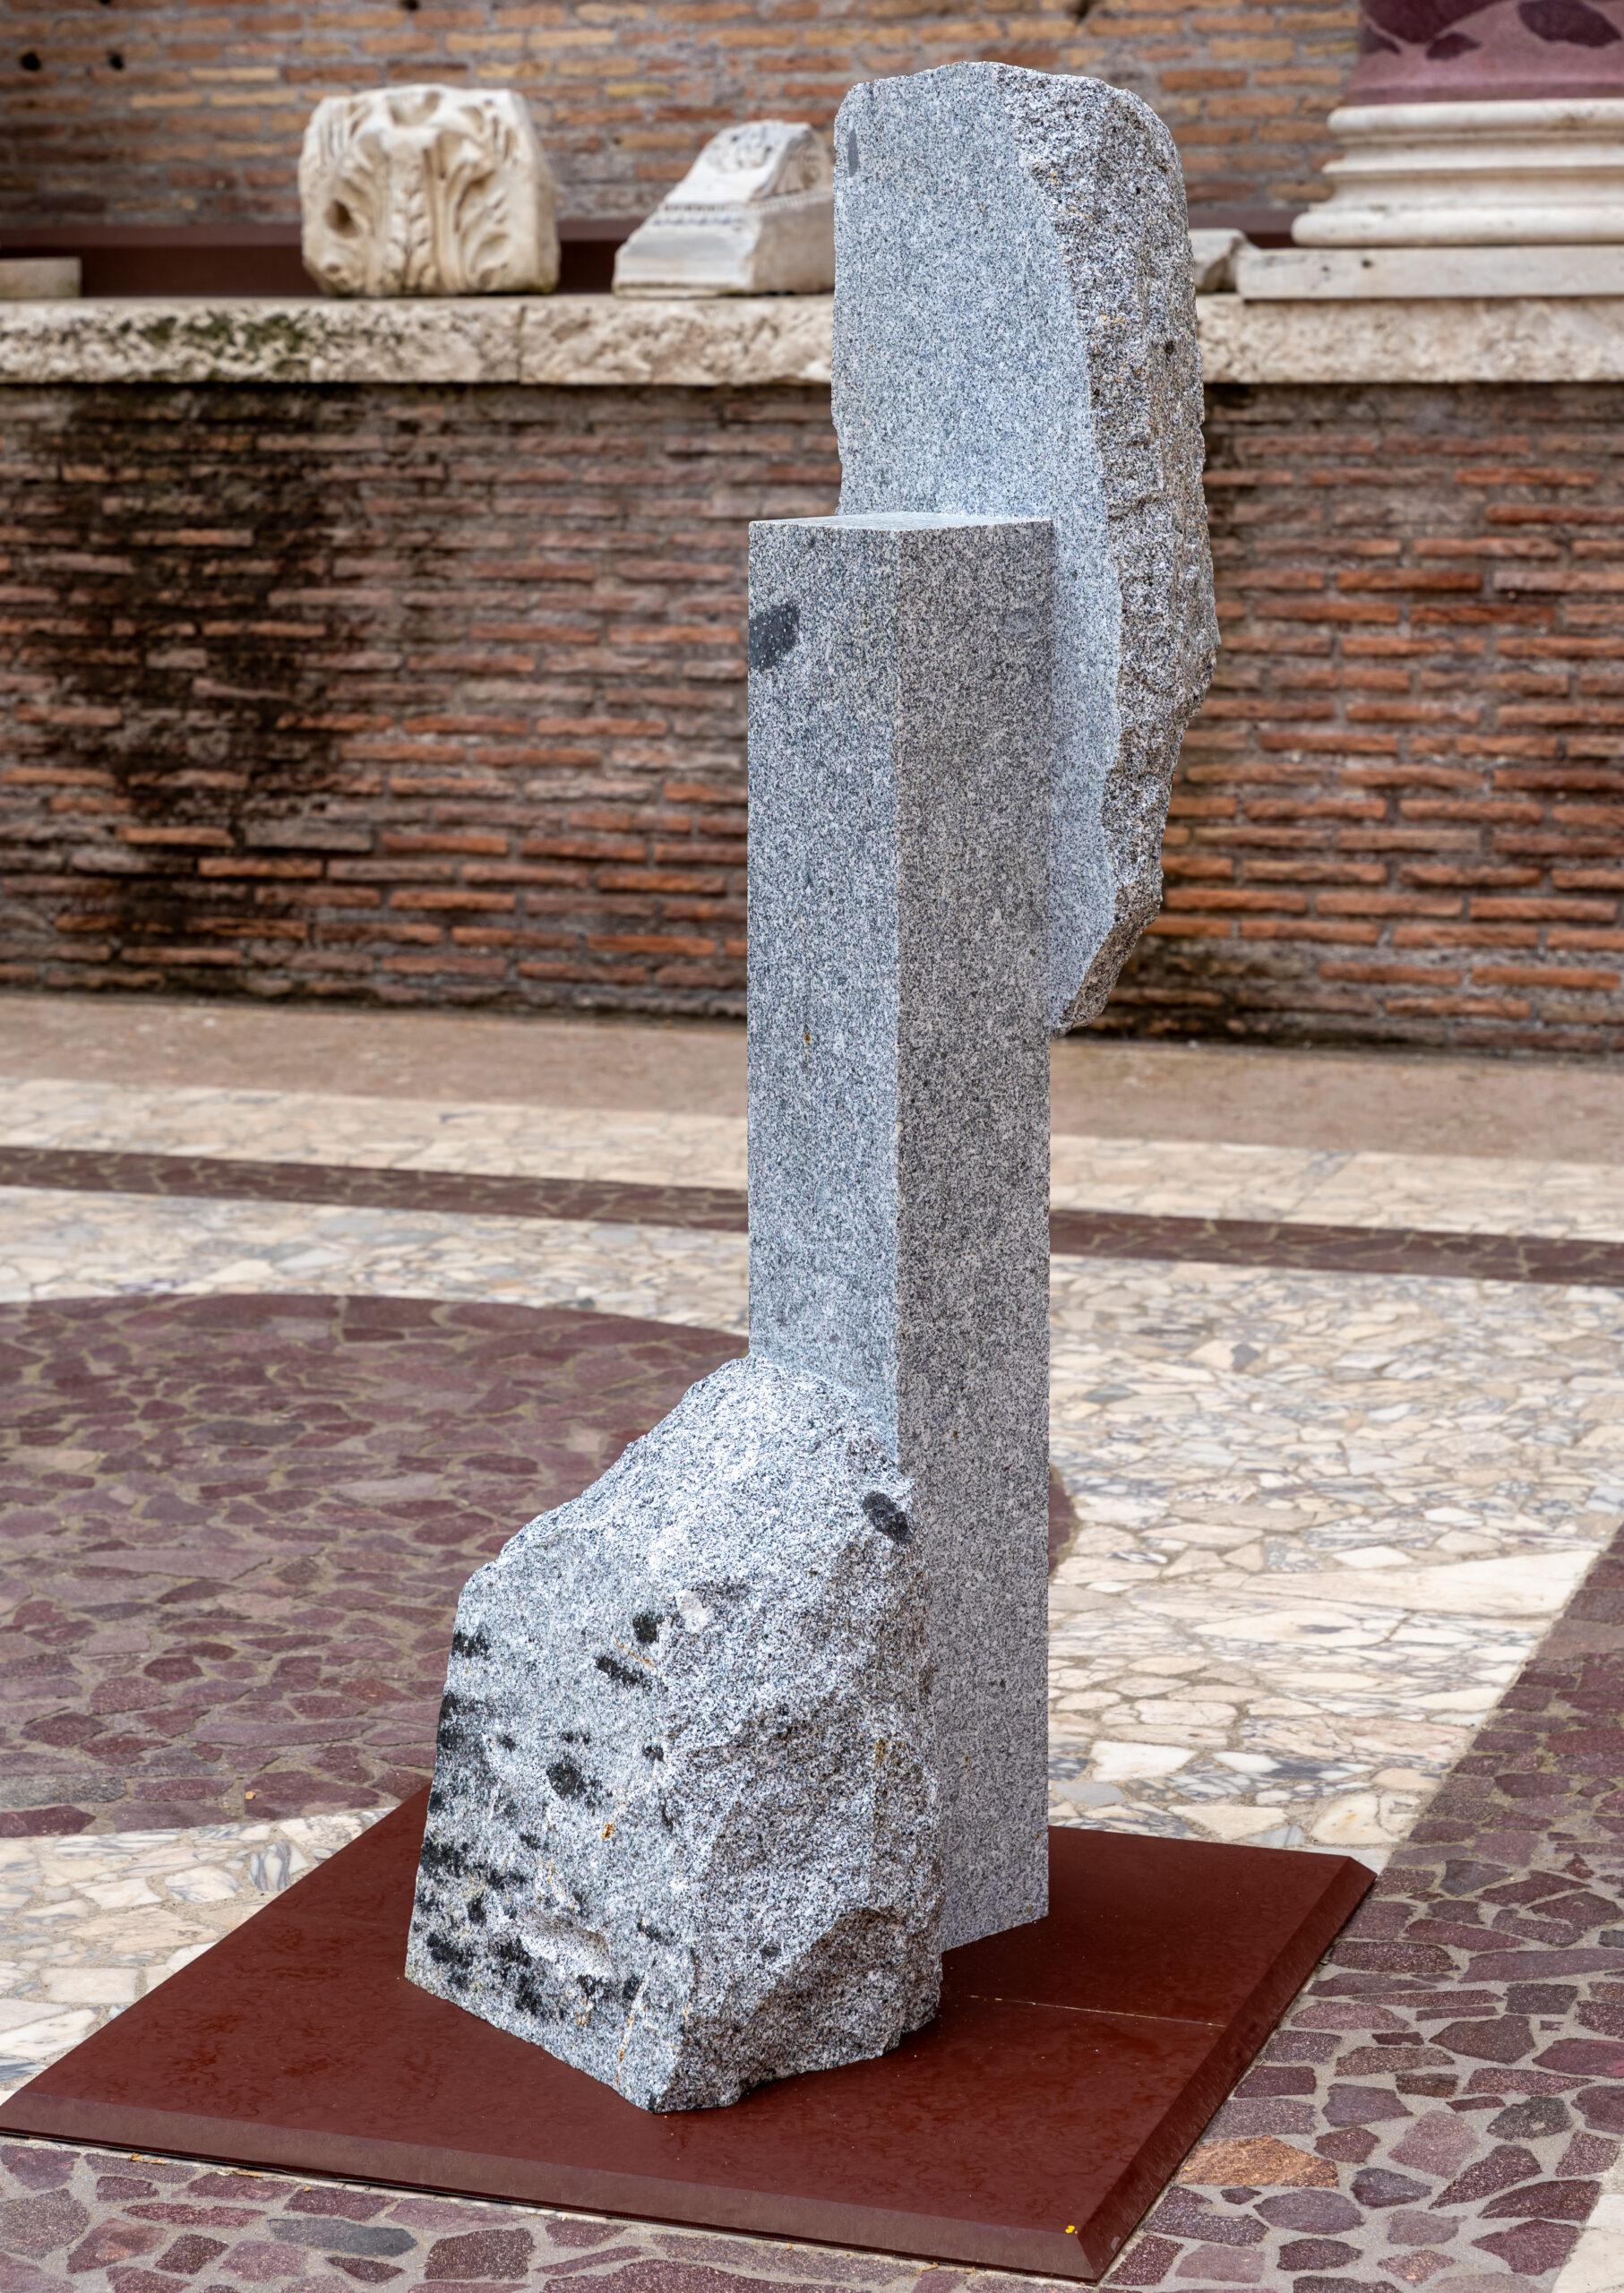 Korè-Elba-Granit ist eine einzigartige monumentale Skulptur des zeitgenössischen Künstlers Mattia Bosco. Diese Skulptur ist aus Elba-Granit gefertigt und hat die Maße 176,5 × 48 × 88,5 cm (69,5 × 18,9 × 34,8 in). 

Diese Arbeit ist Teil einer